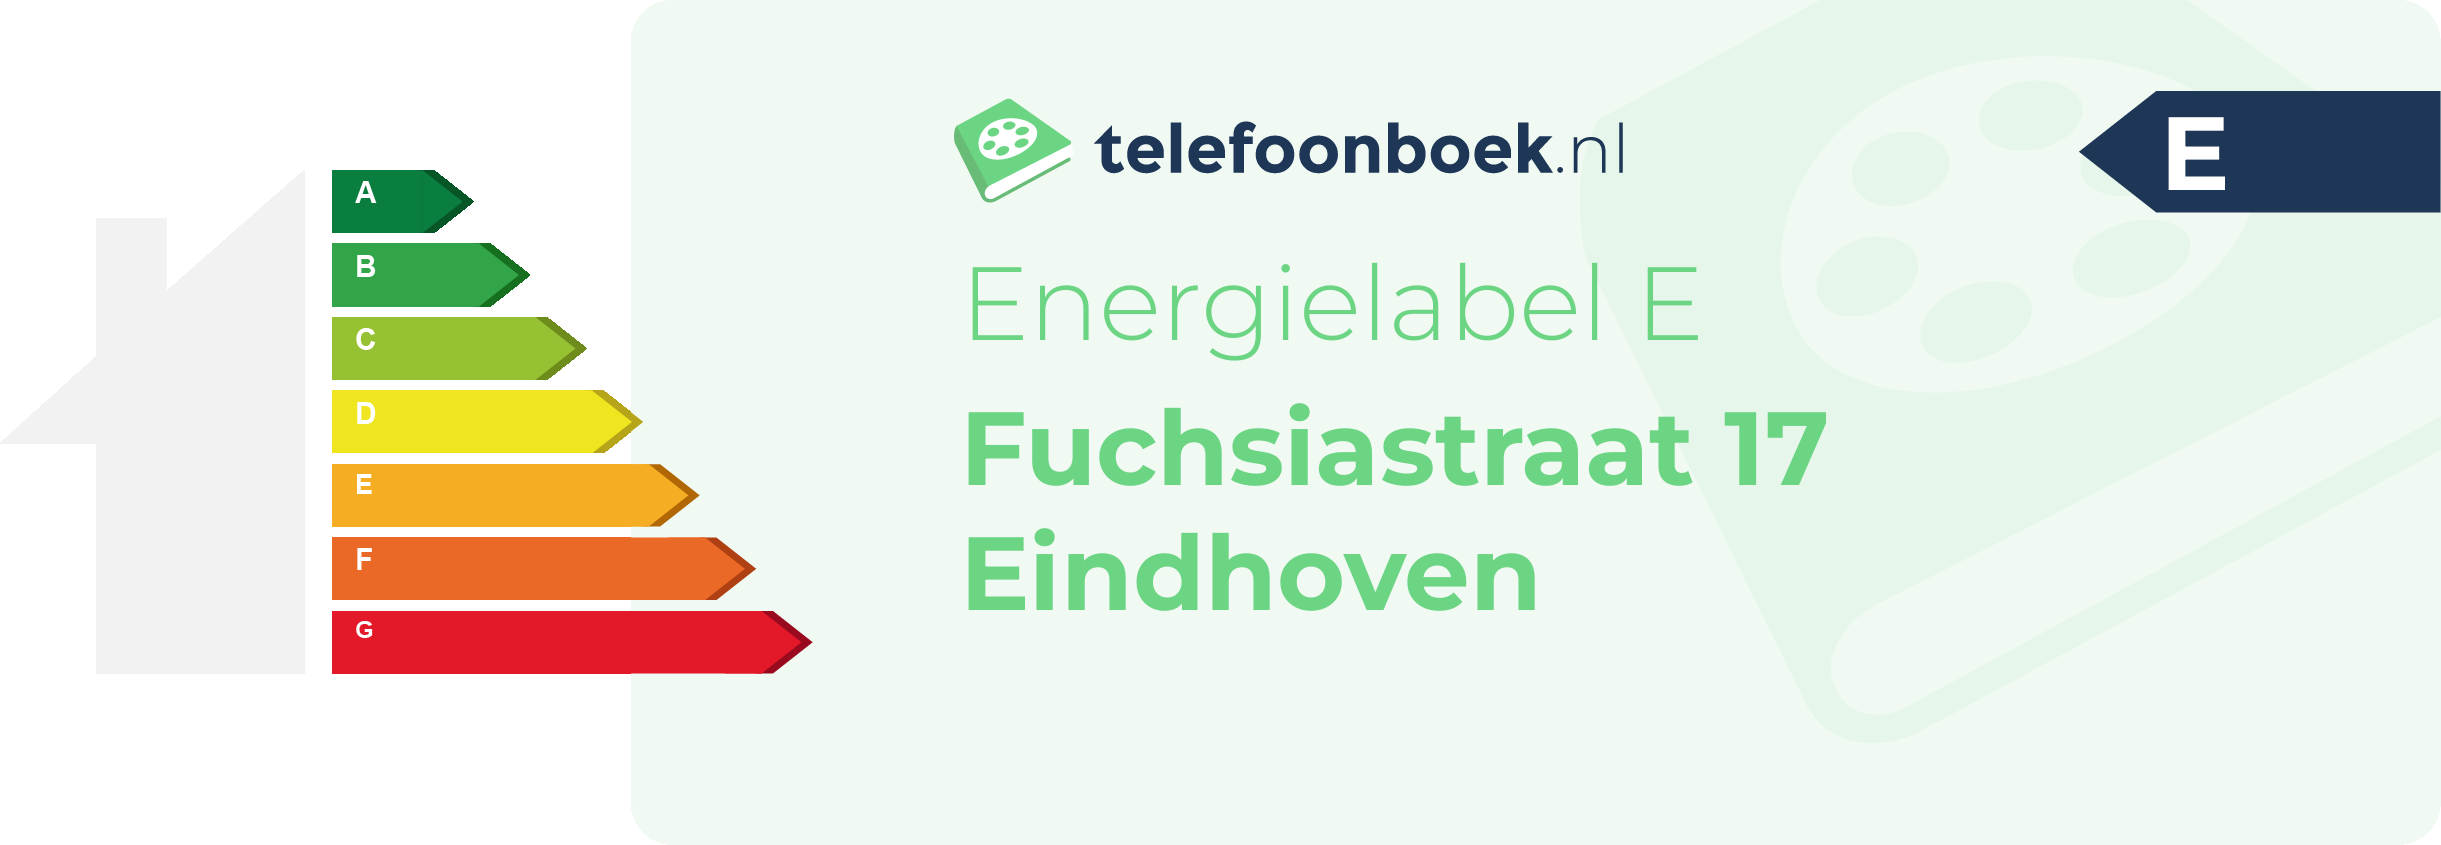 Energielabel Fuchsiastraat 17 Eindhoven